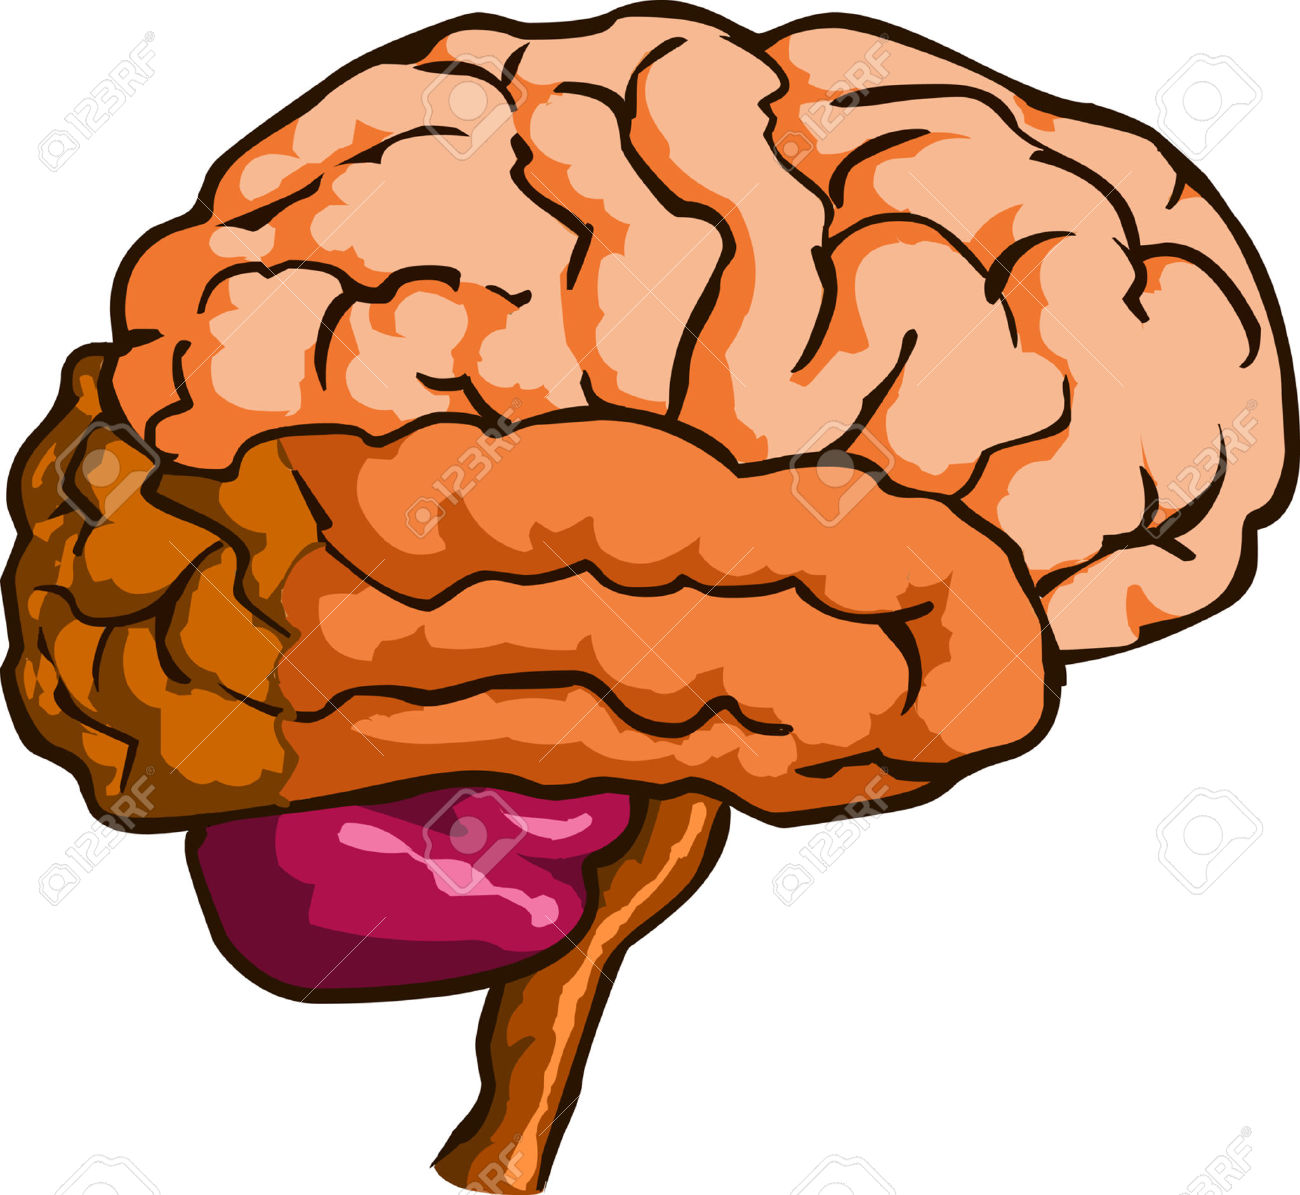 brain clipart - Clipart Brain